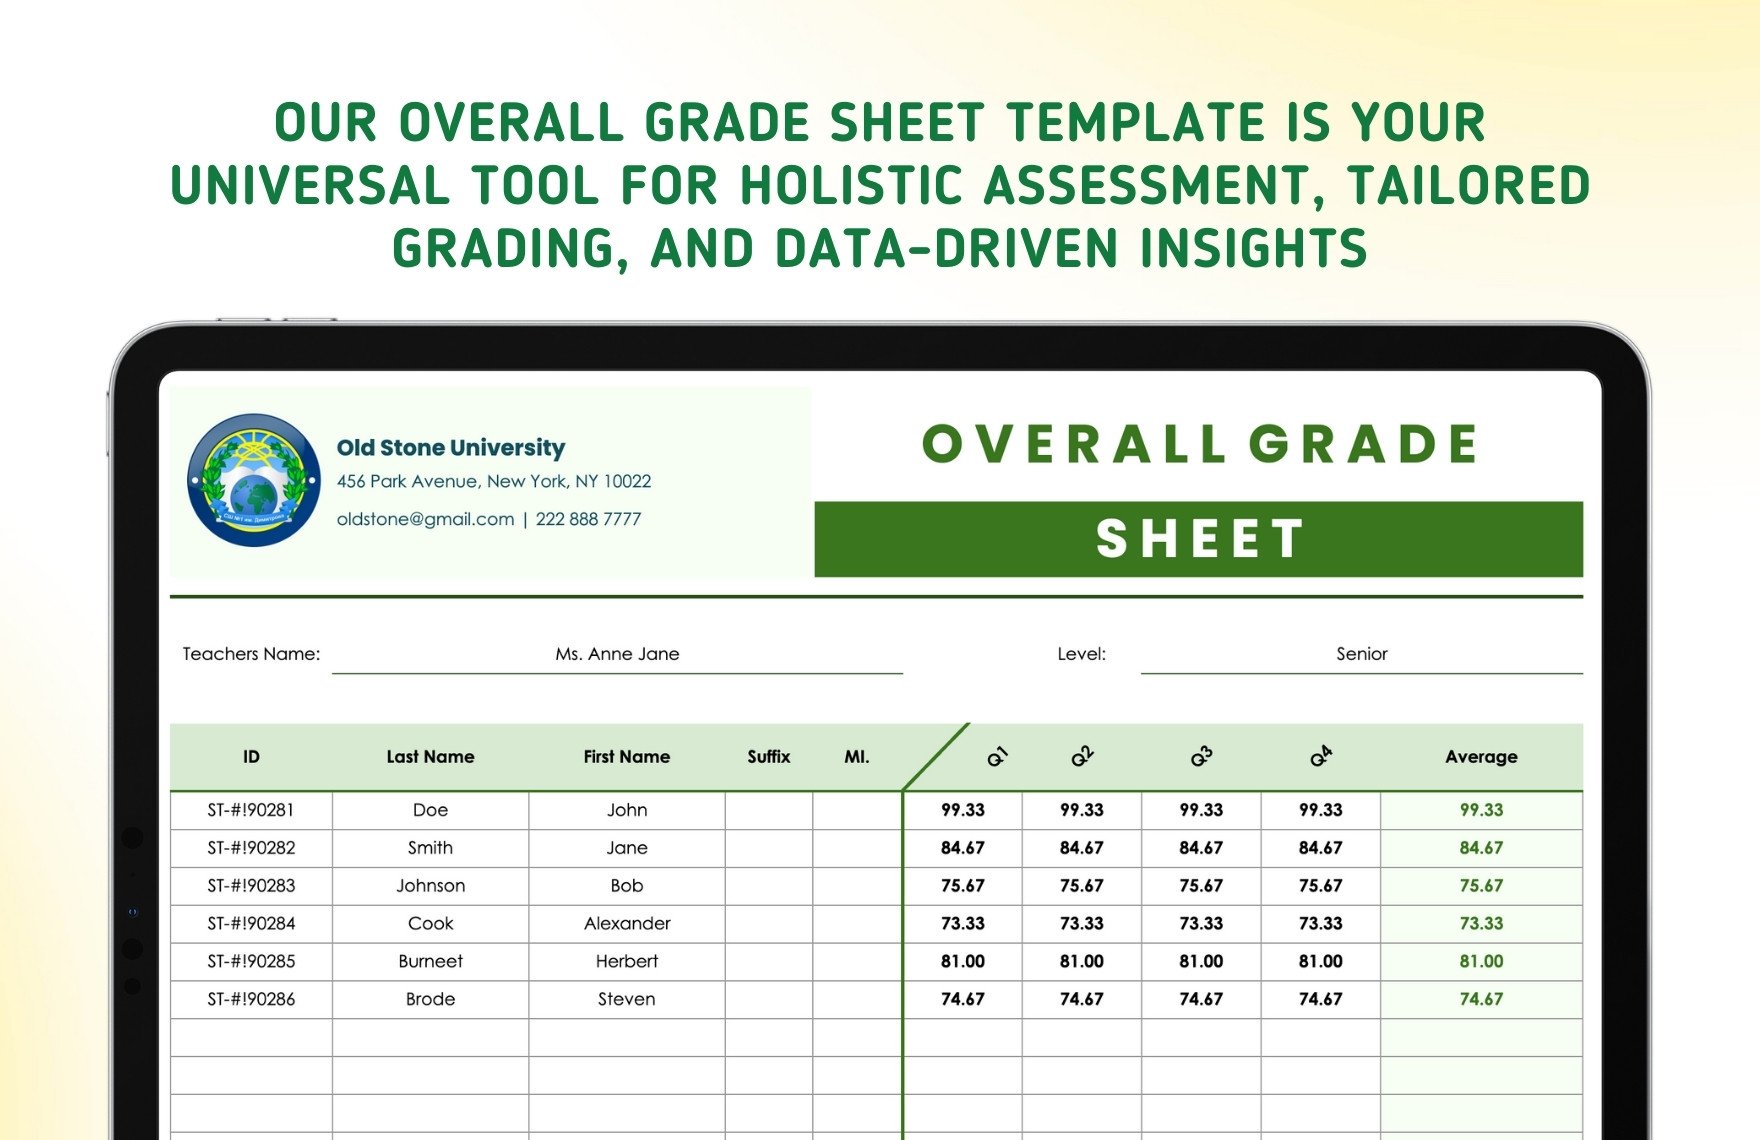 Overall Grade Sheet Template